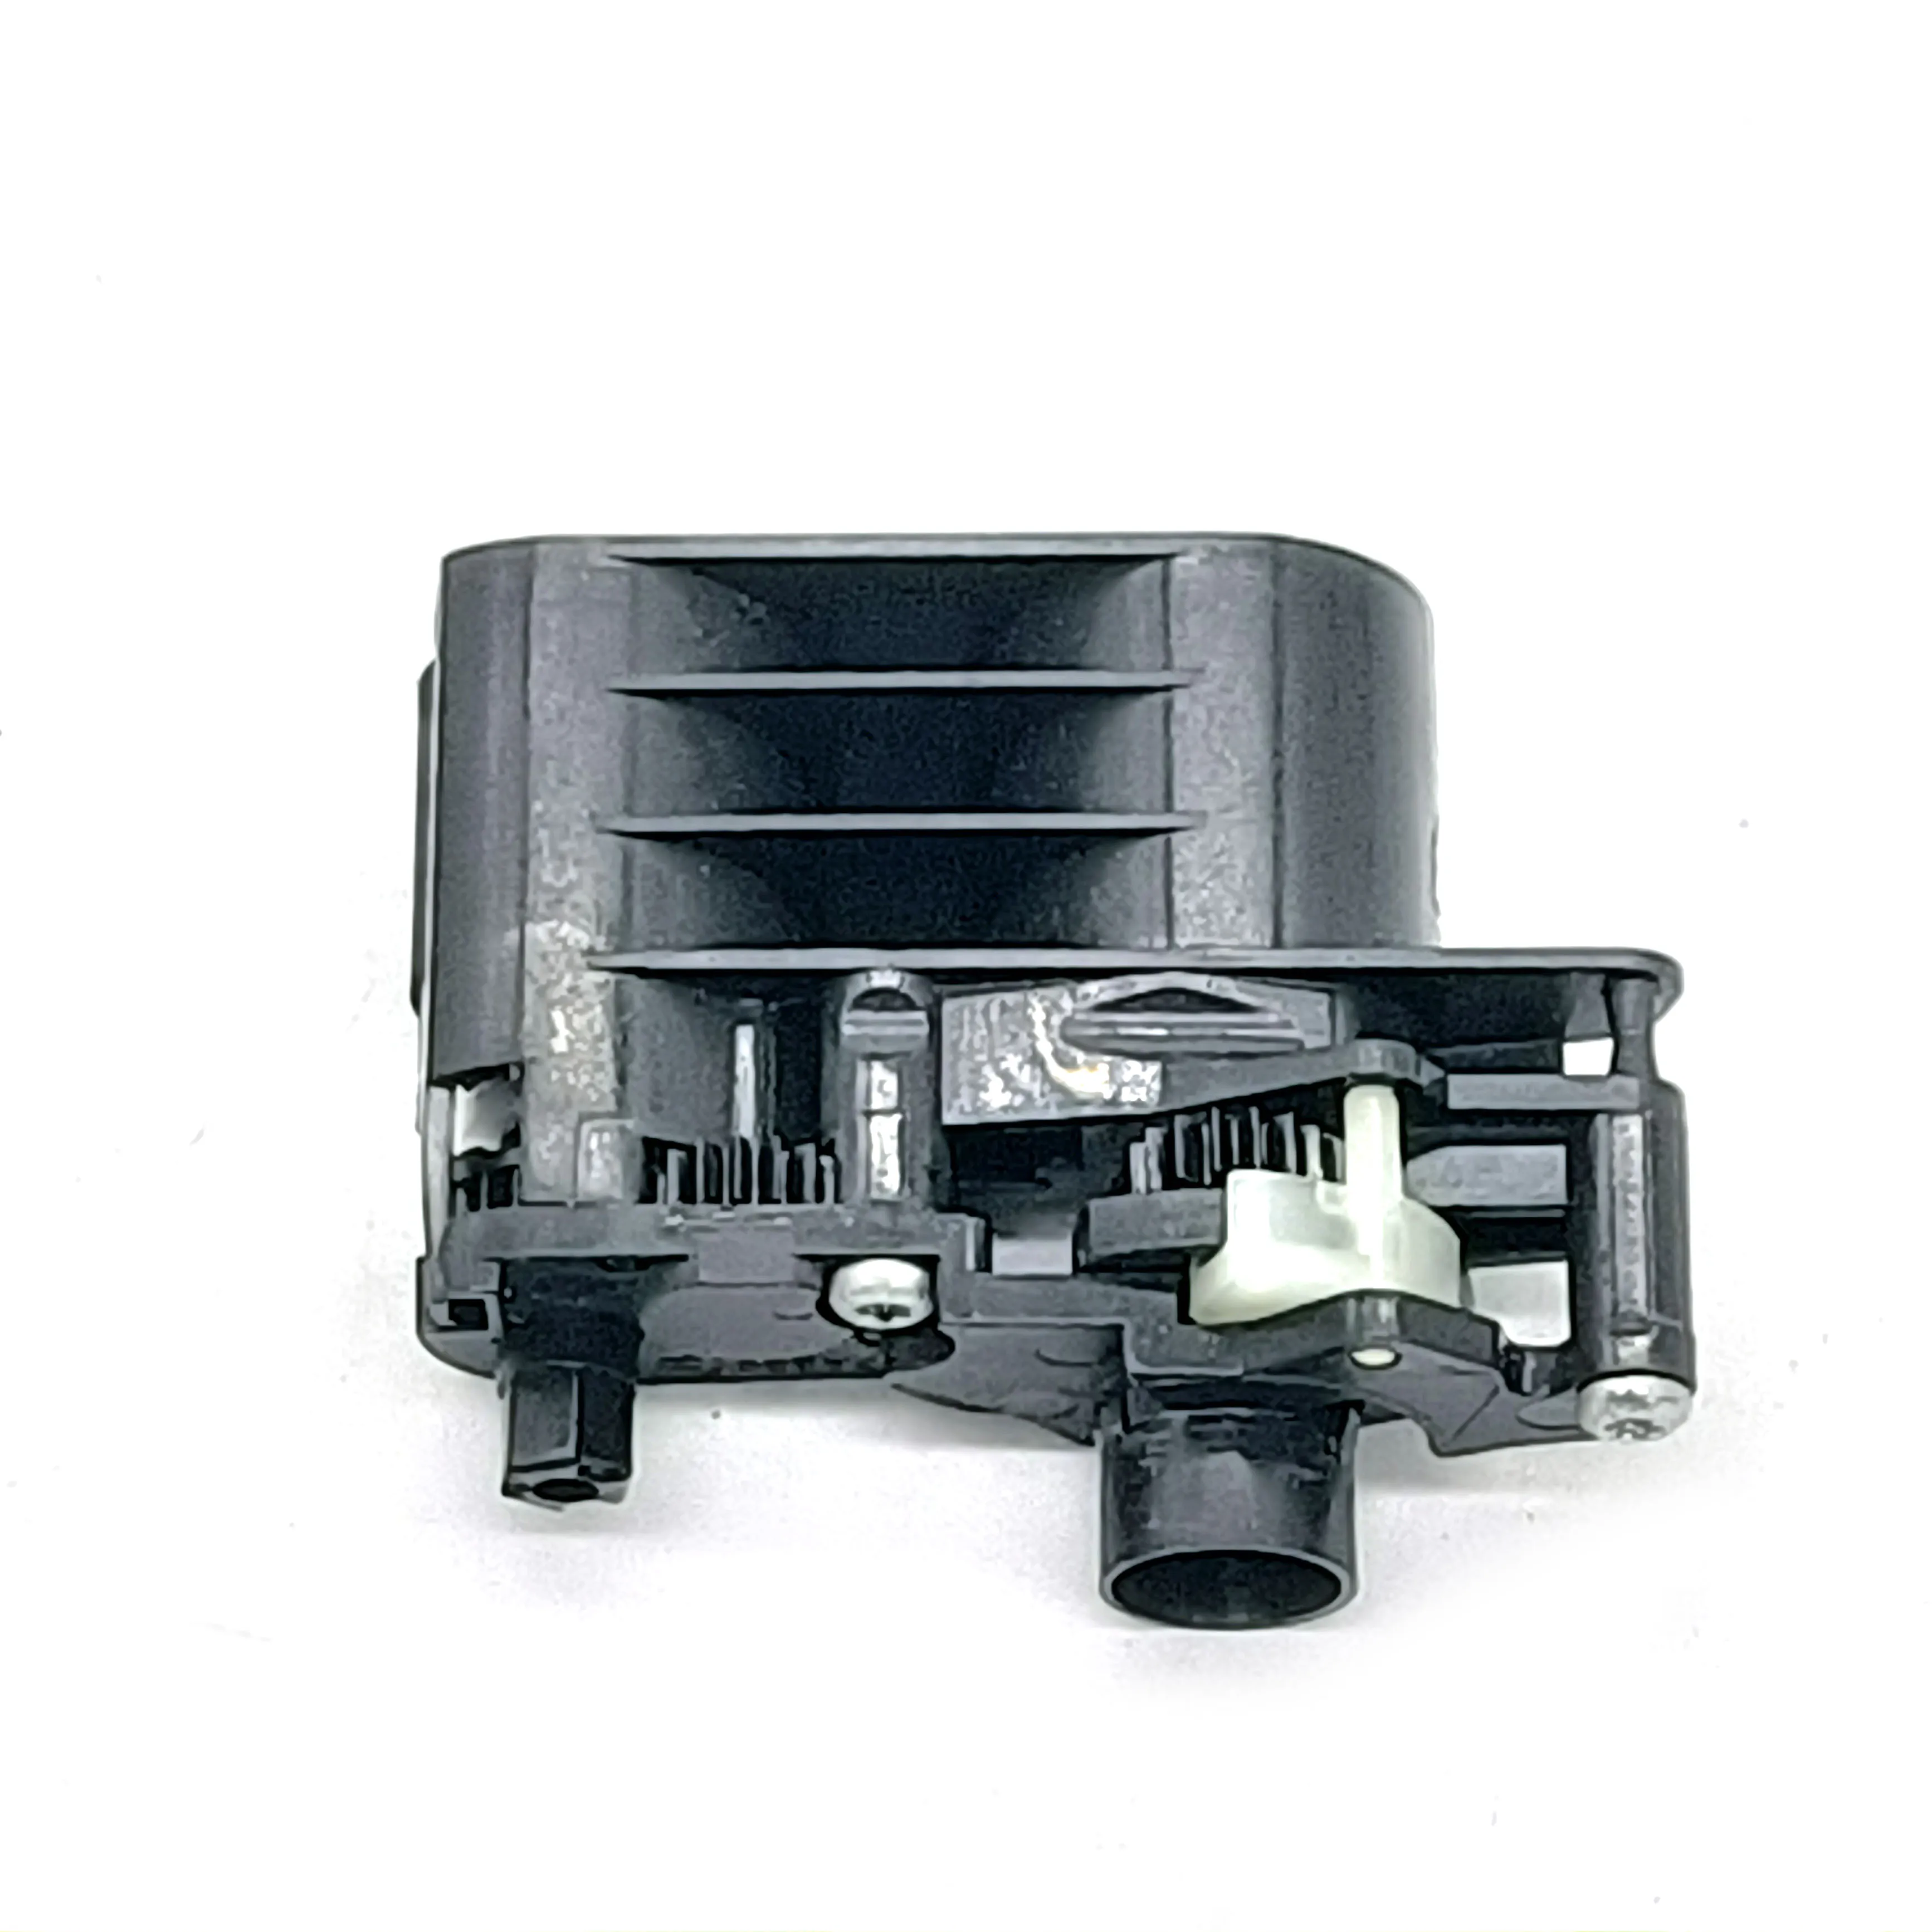 

Adf Paper Roller fits for HP C6200 C6240 C7250 C6150 C5150 C5140 C5100